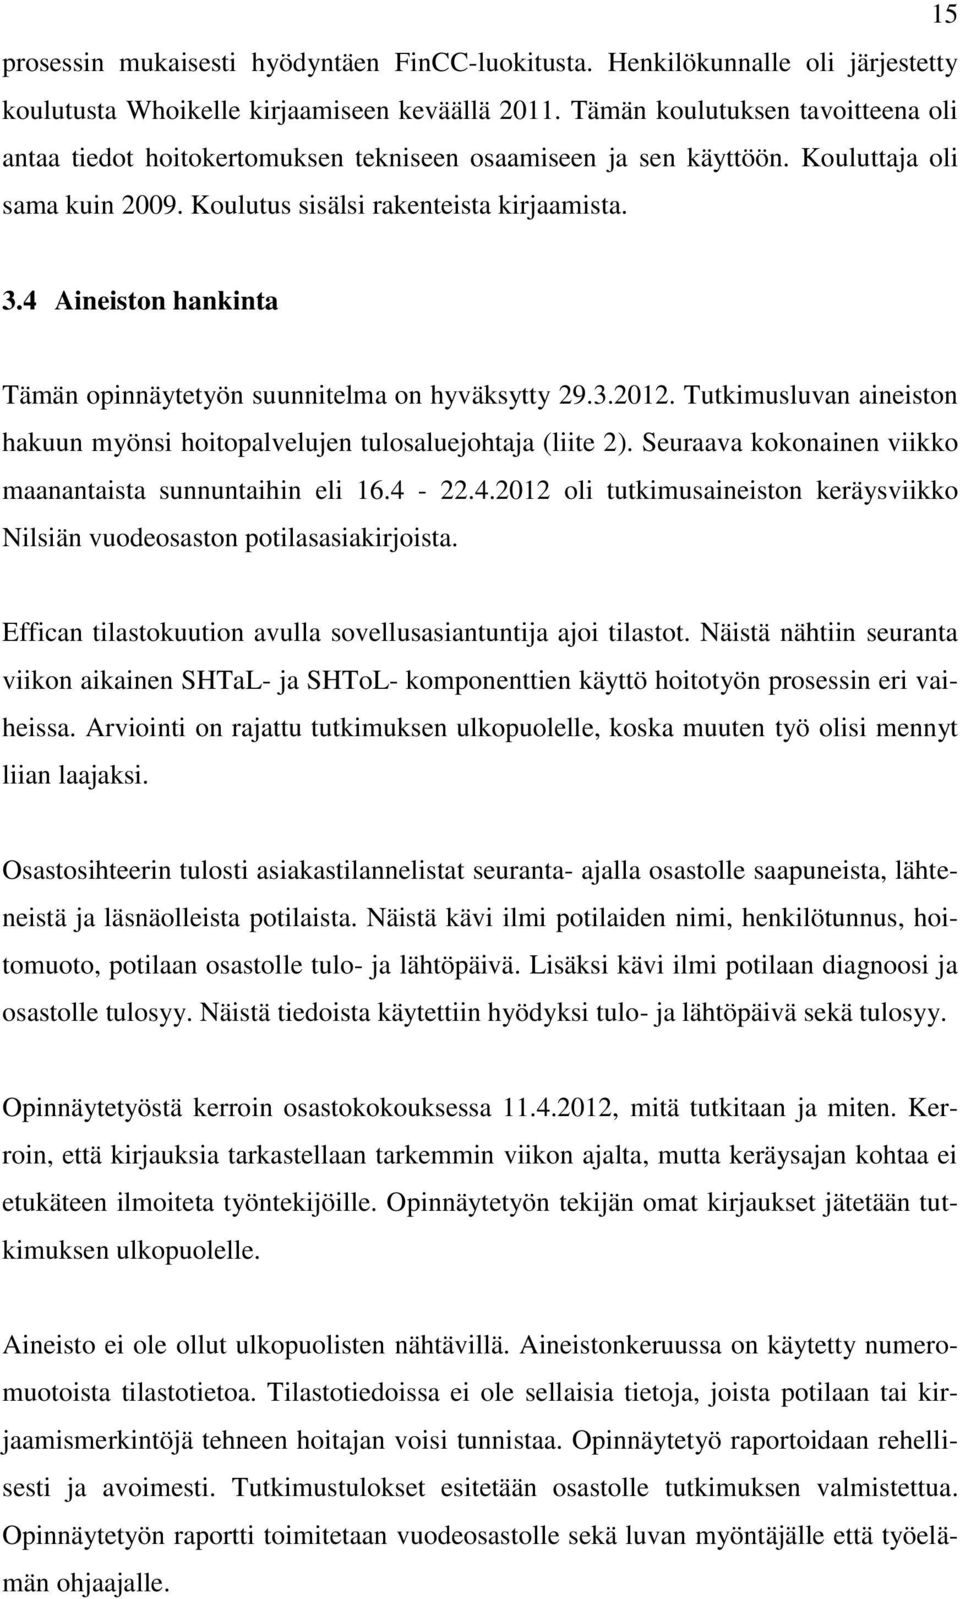 4 Aineiston hankinta Tämän opinnäytetyön suunnitelma on hyväksytty 29.3.2012. Tutkimusluvan aineiston hakuun myönsi hoitopalvelujen tulosaluejohtaja (liite 2).